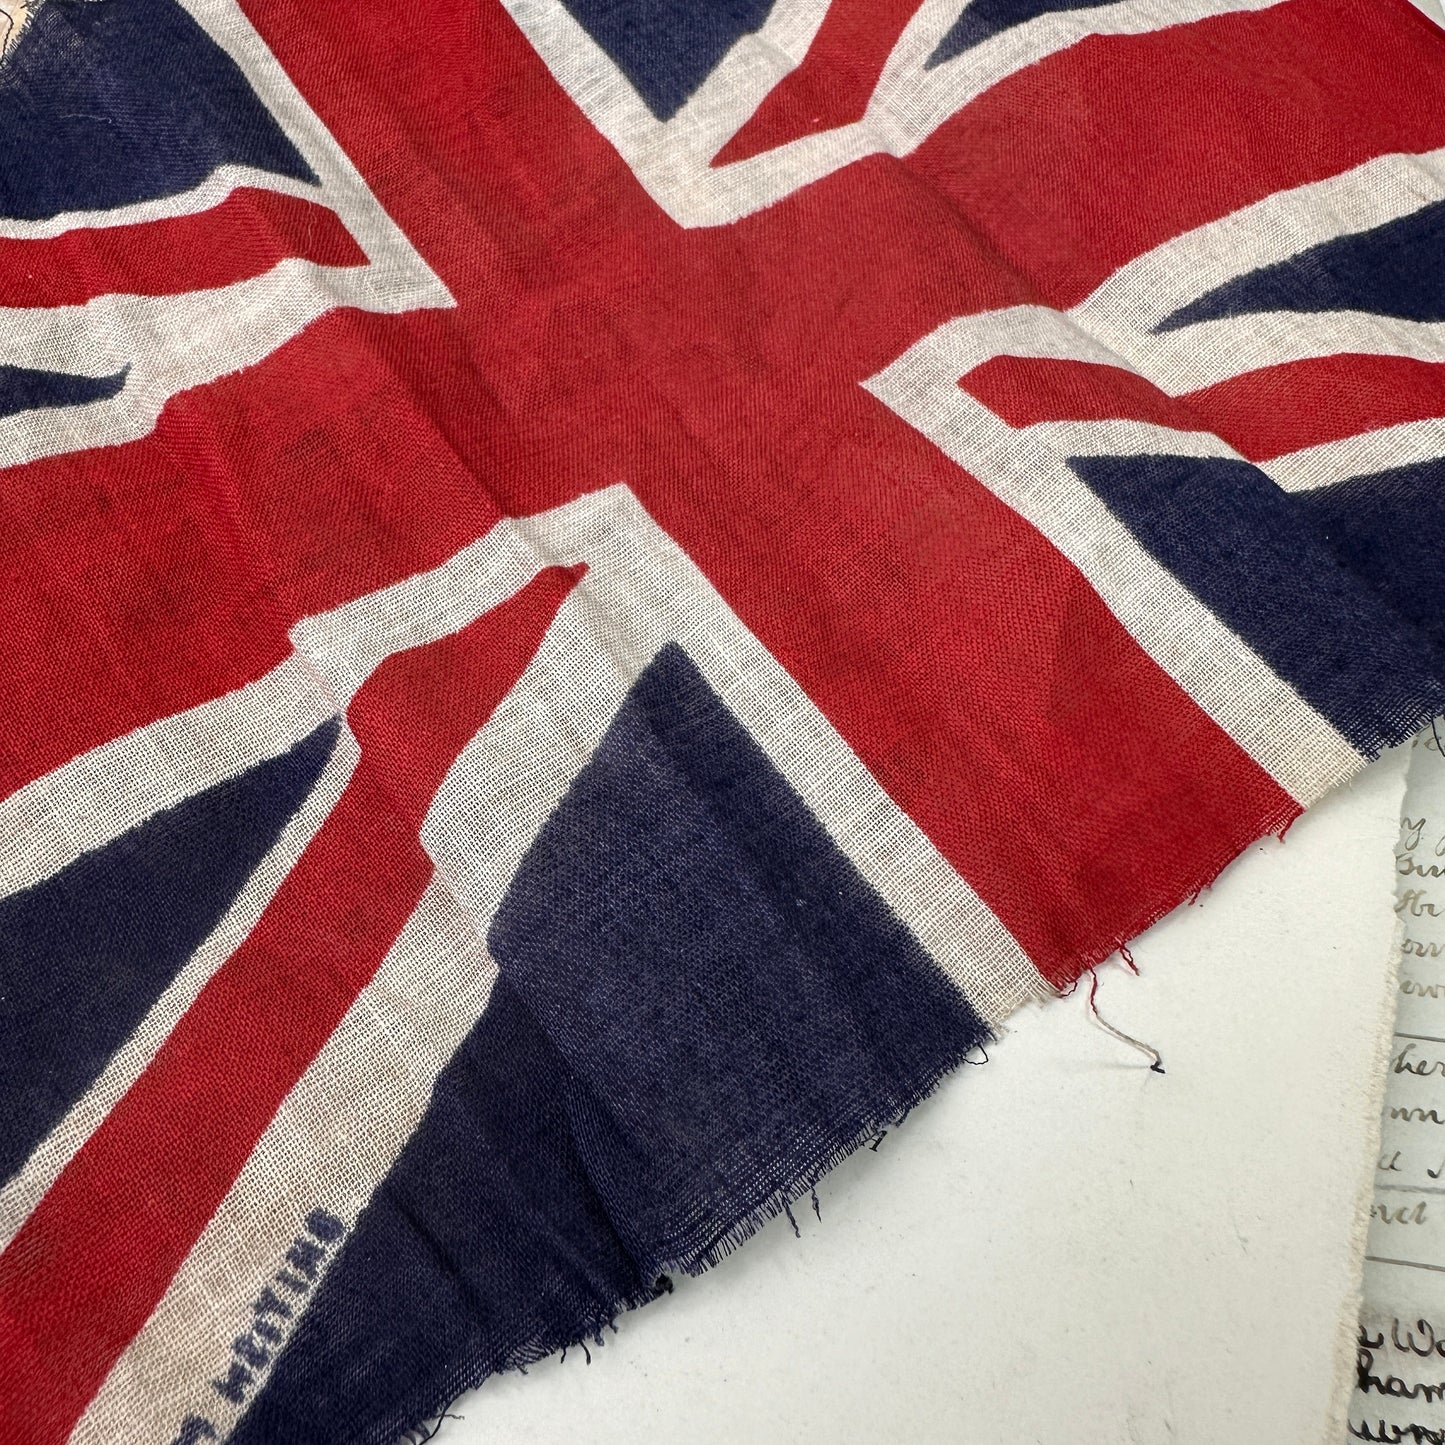 Vintage Union Jack British Fag